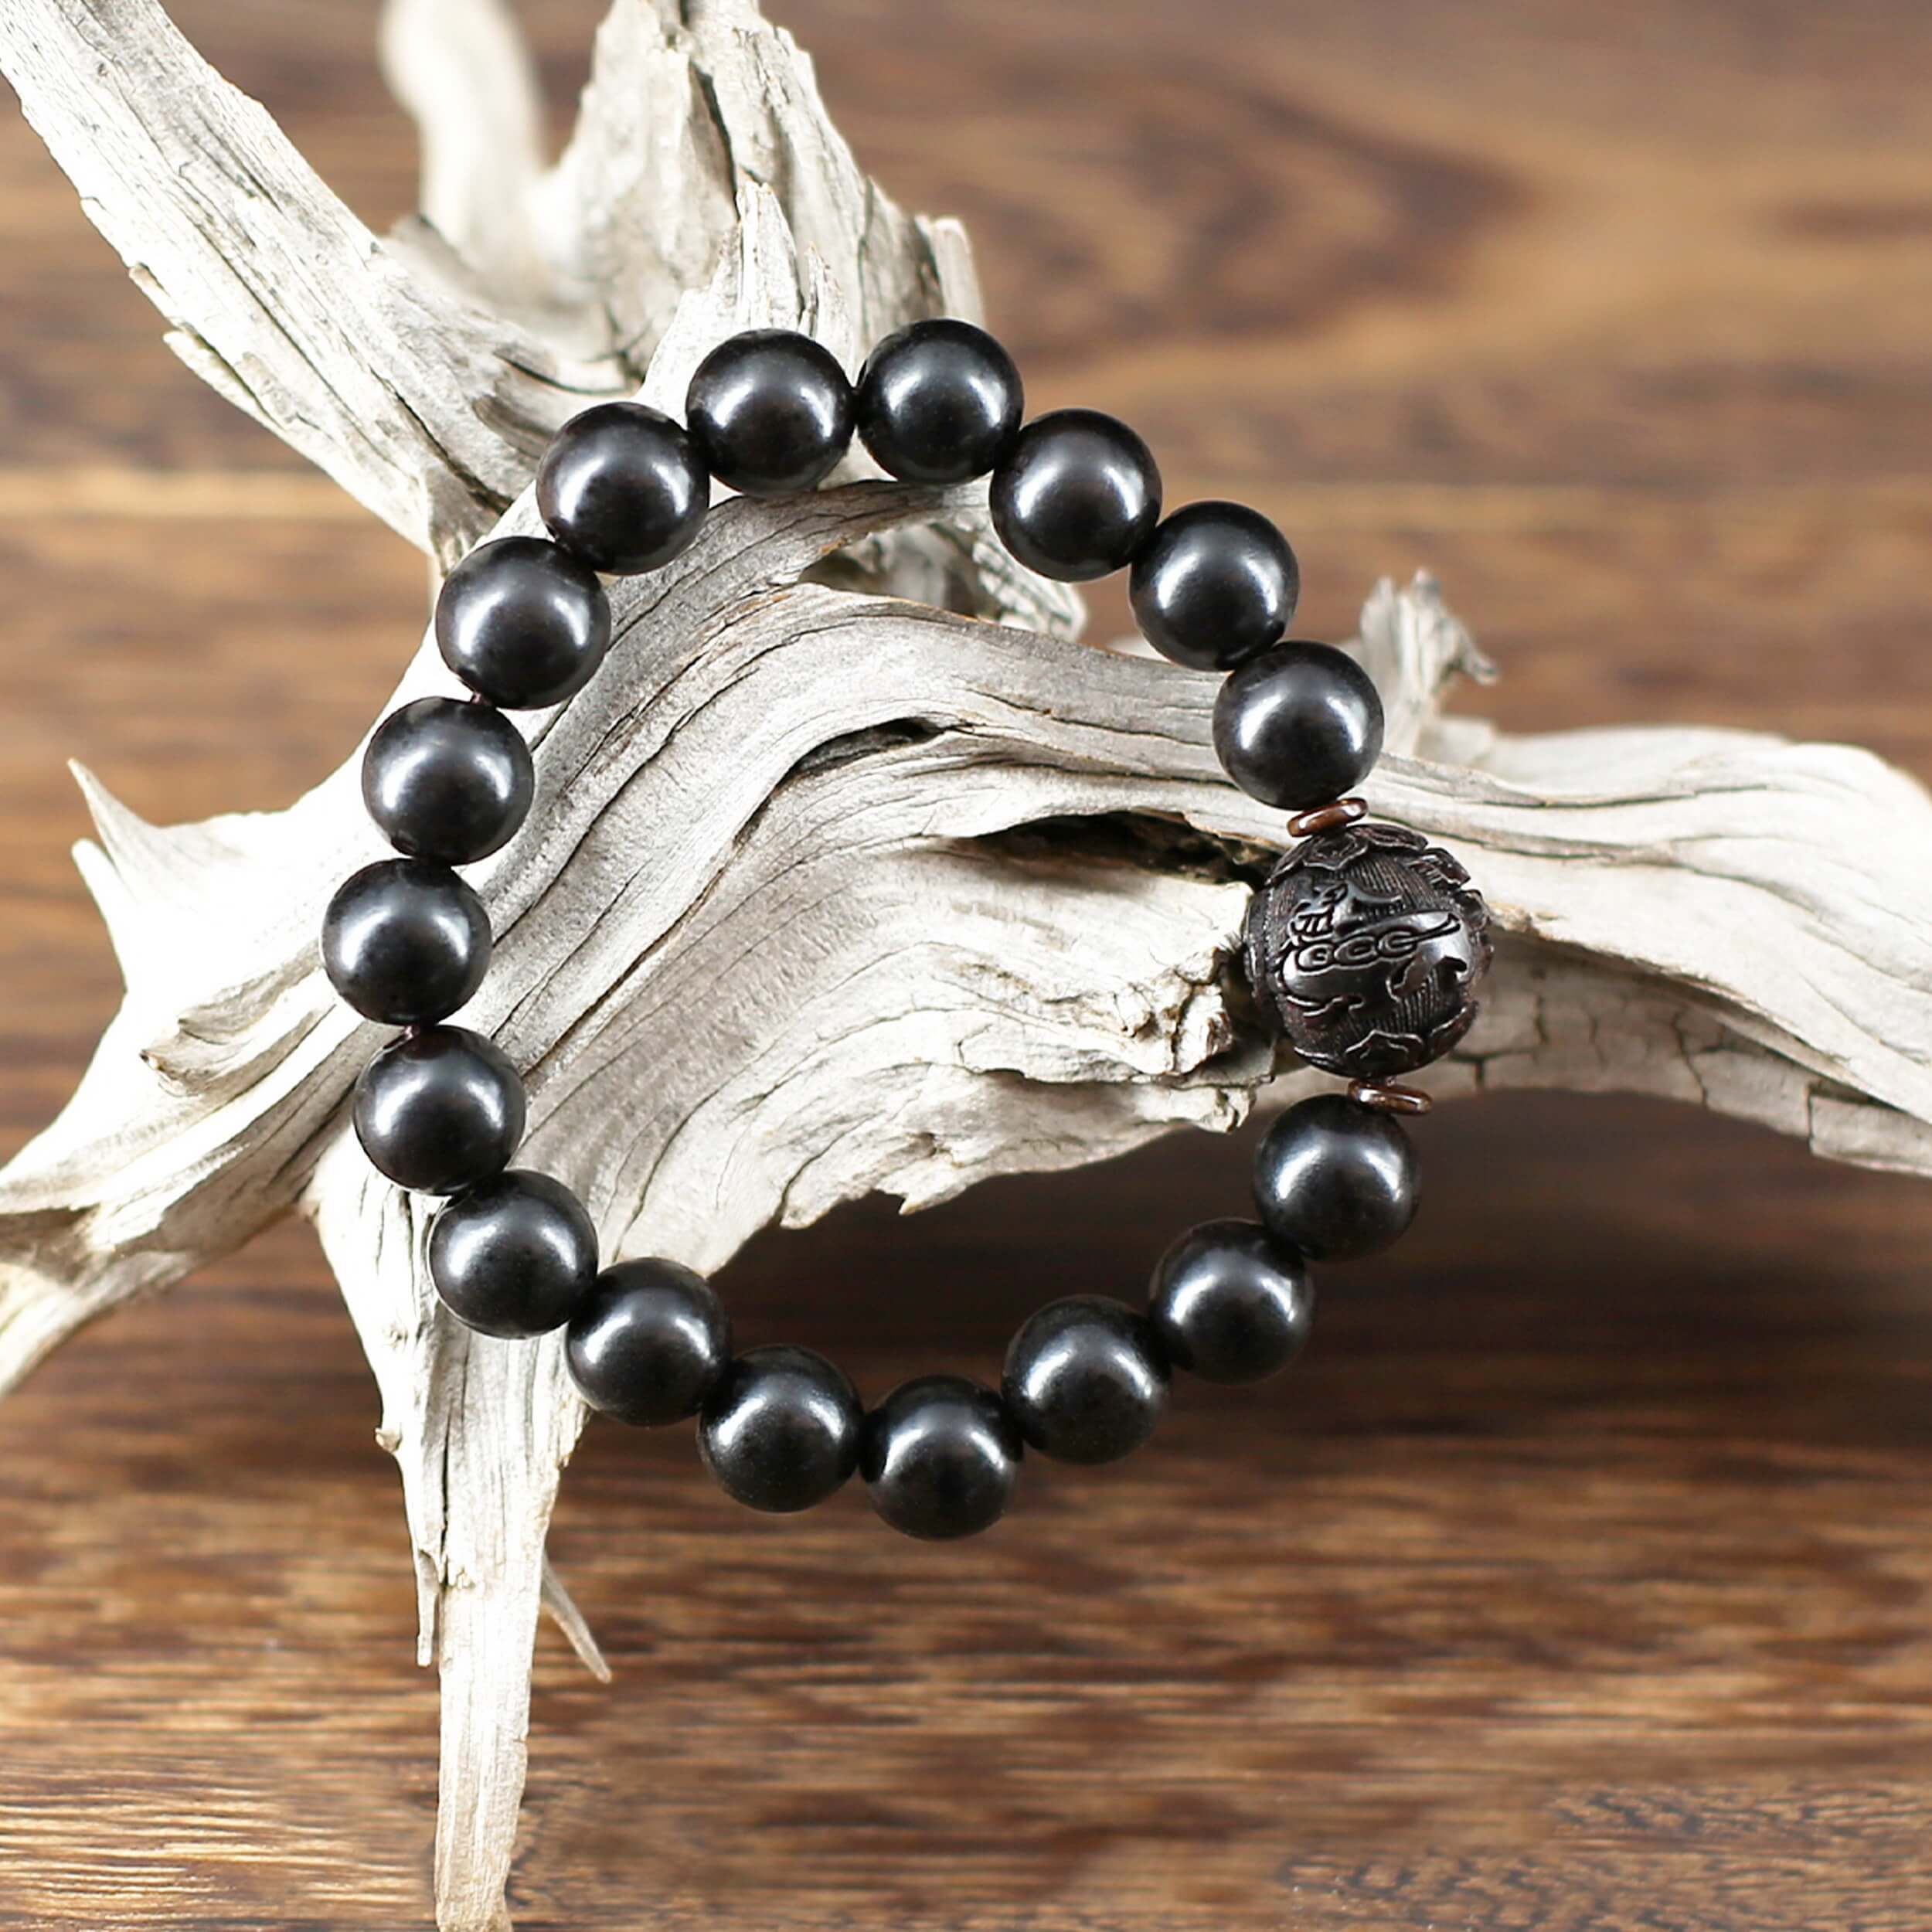 Créé à partir de belles perles de Bois de Santal noir au poli soyeux et aux reflets sensuels, ce bracelet dégage une grande quantité d’ Énergie positive.